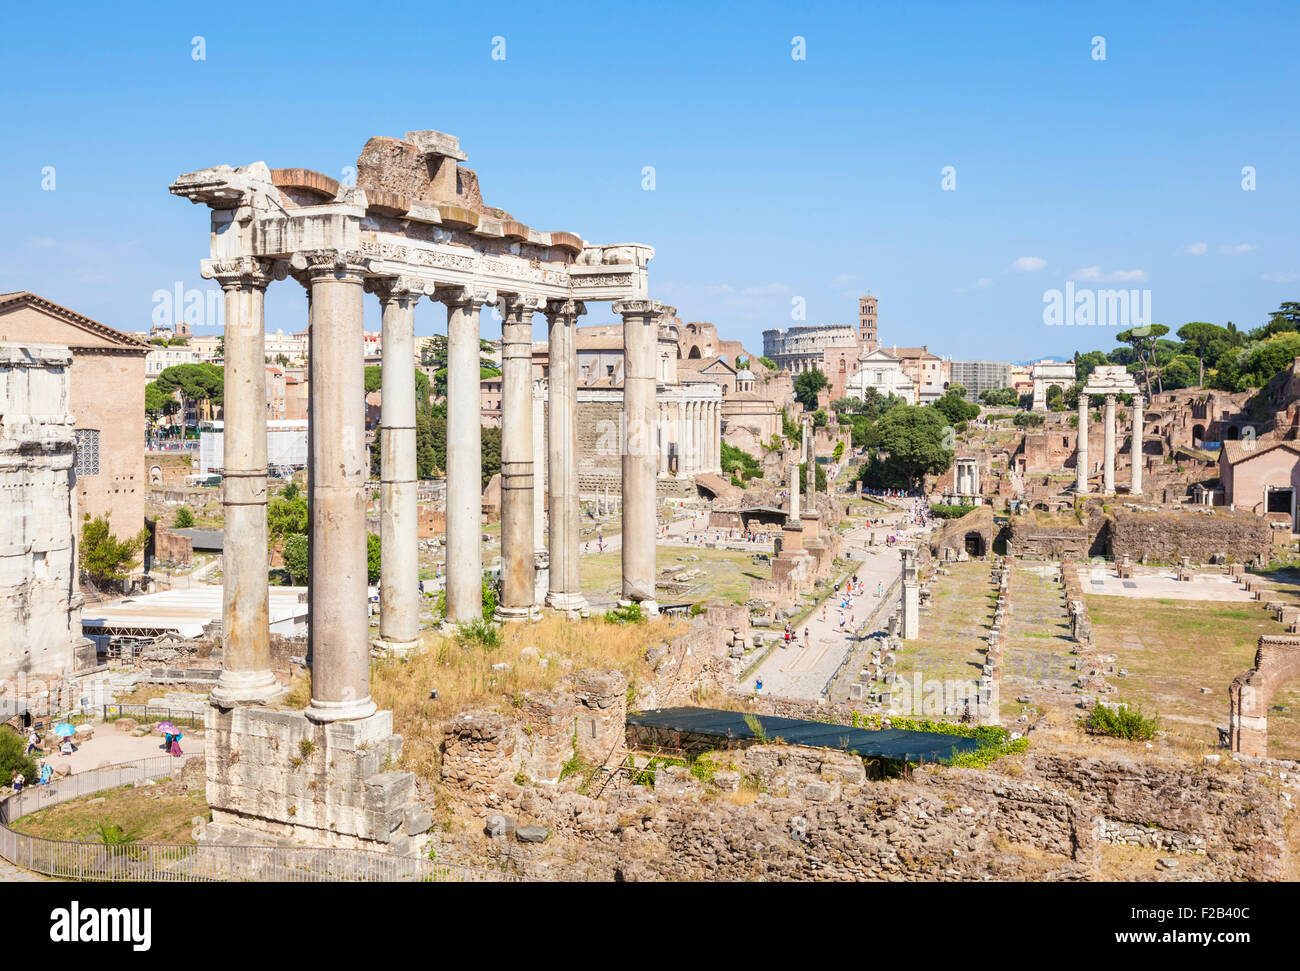 Les colonnes sont les ruines du temple de Saturne, un temple au dieu Saturne dans le Forum Romain Rome Lazio Italie Europe de l'UE Banque D'Images